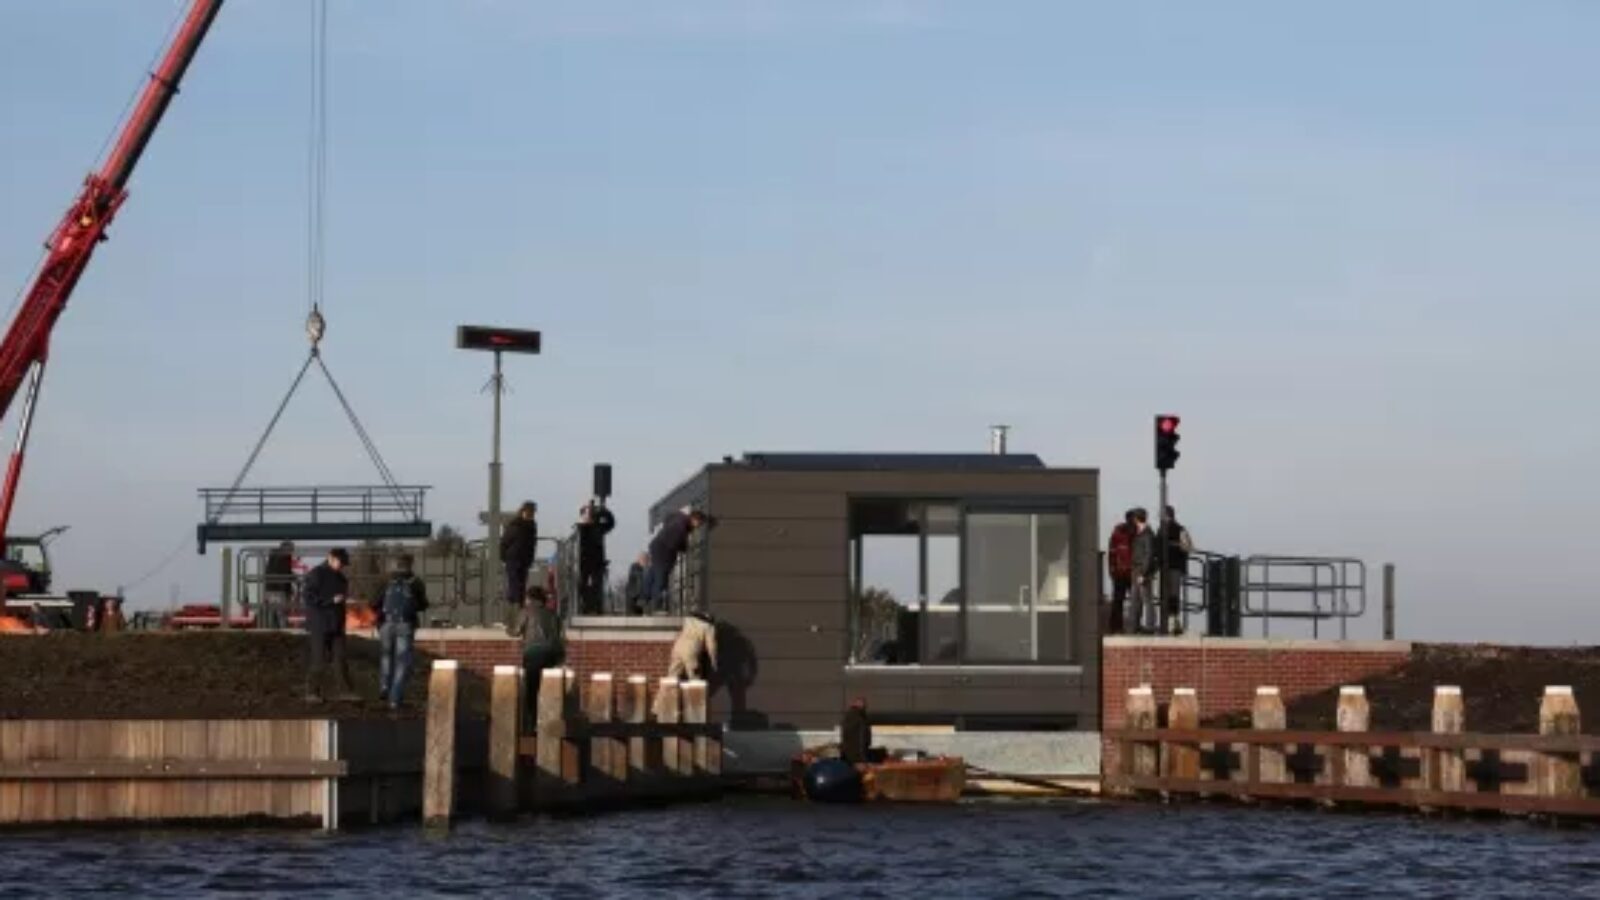 Waterwoning bereikt bestemming Meerstad via nieuwe vaarverbinding met sluis